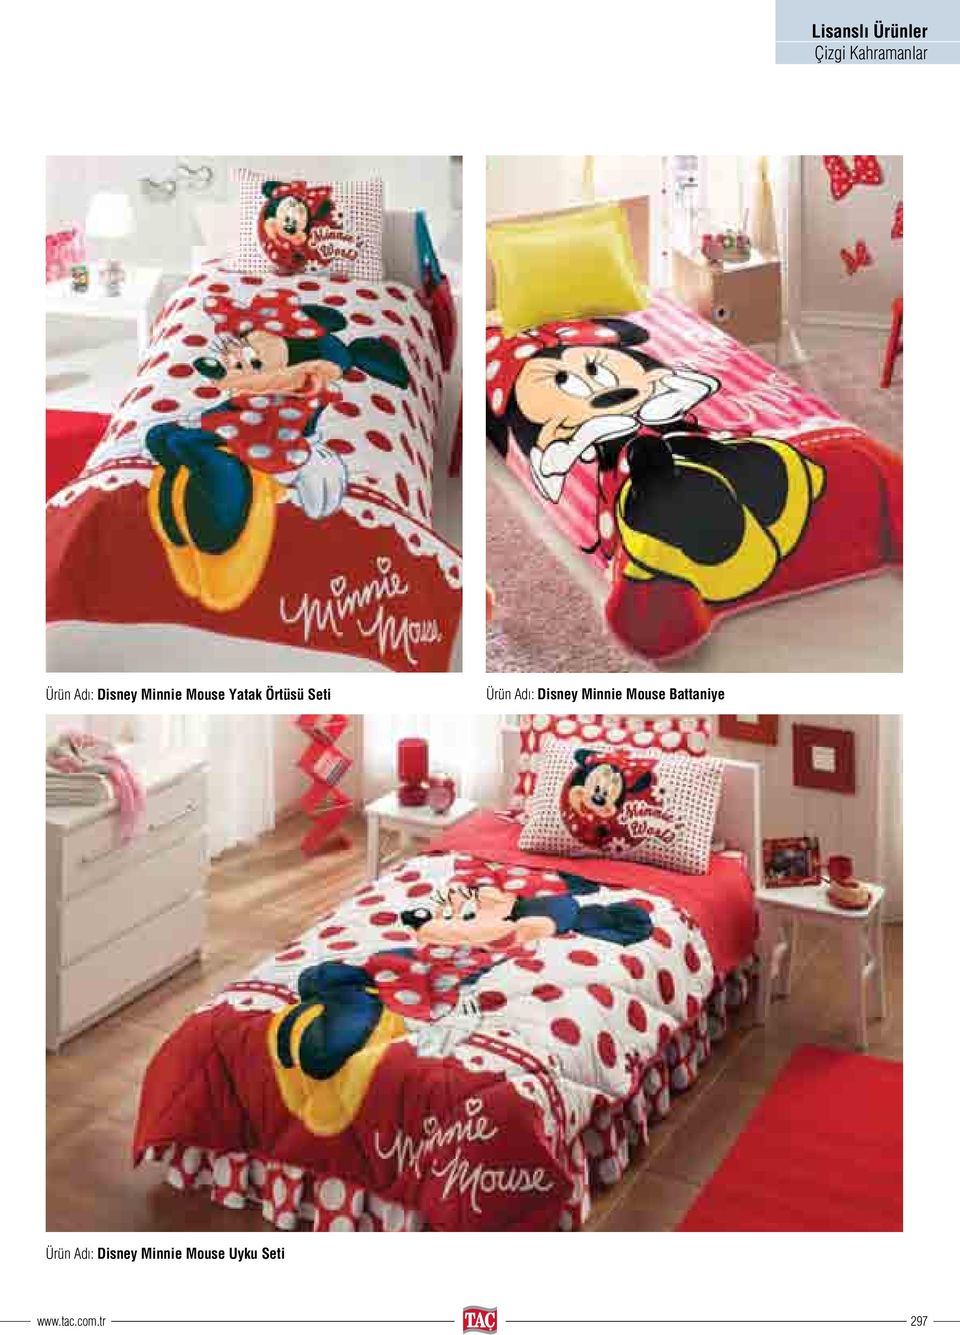 Adı: Disney Minnie Mouse Battaniye Ürün Adı: